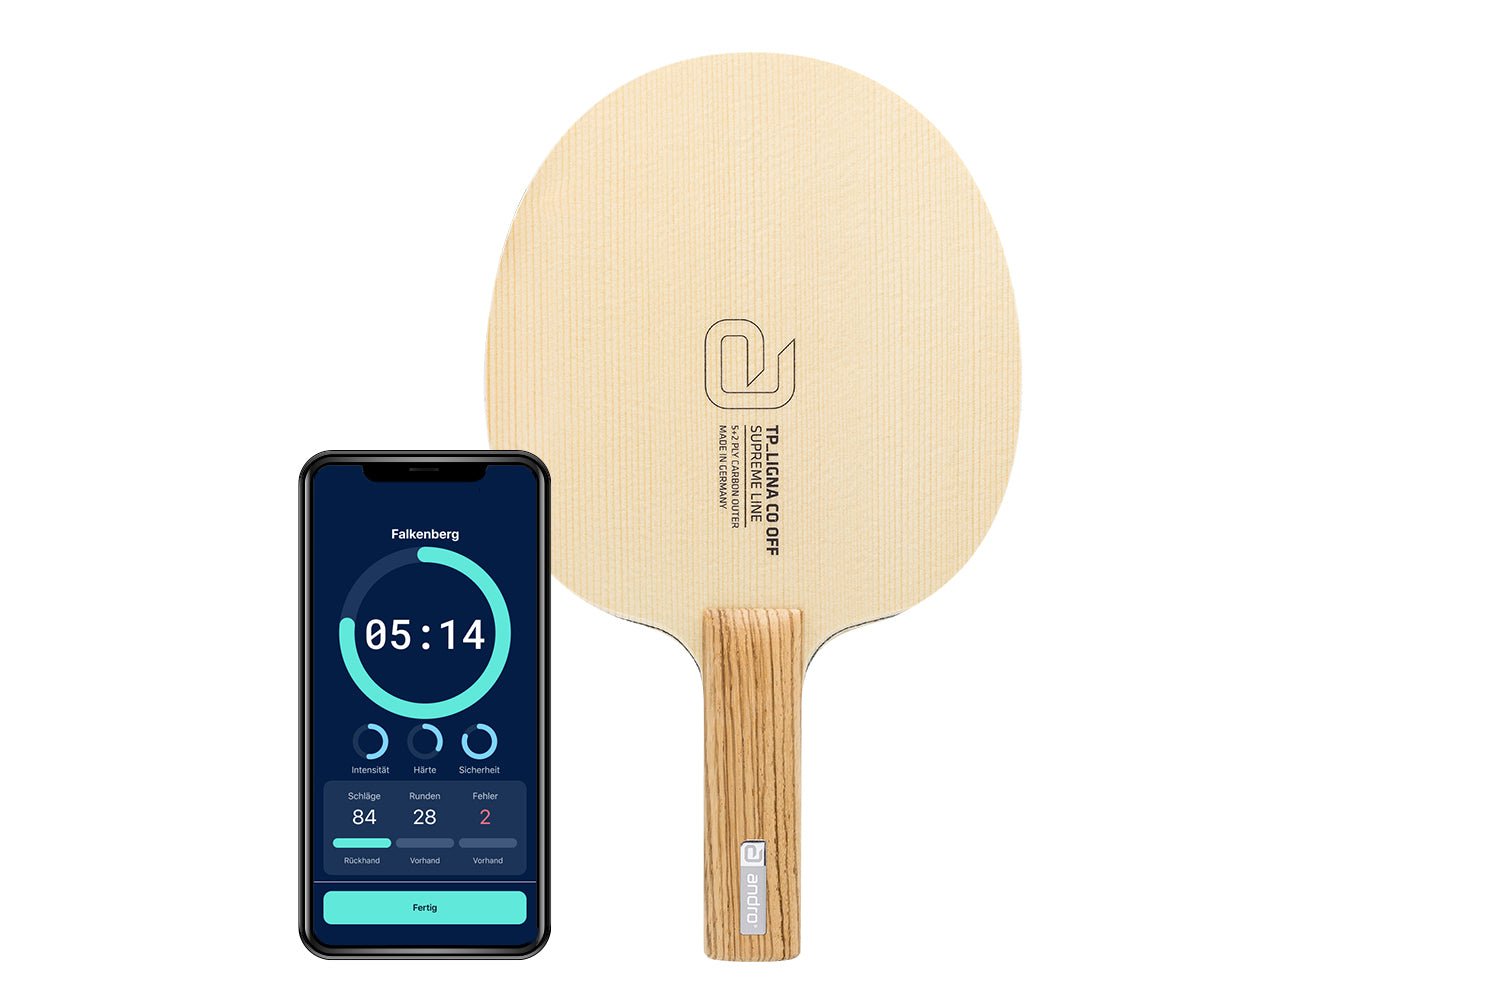 andro TP Ligna CO Tischtennisschläger mit geradem Griff und Smartphone zeigt Daten des Schlägers vor weißem Hintergrund